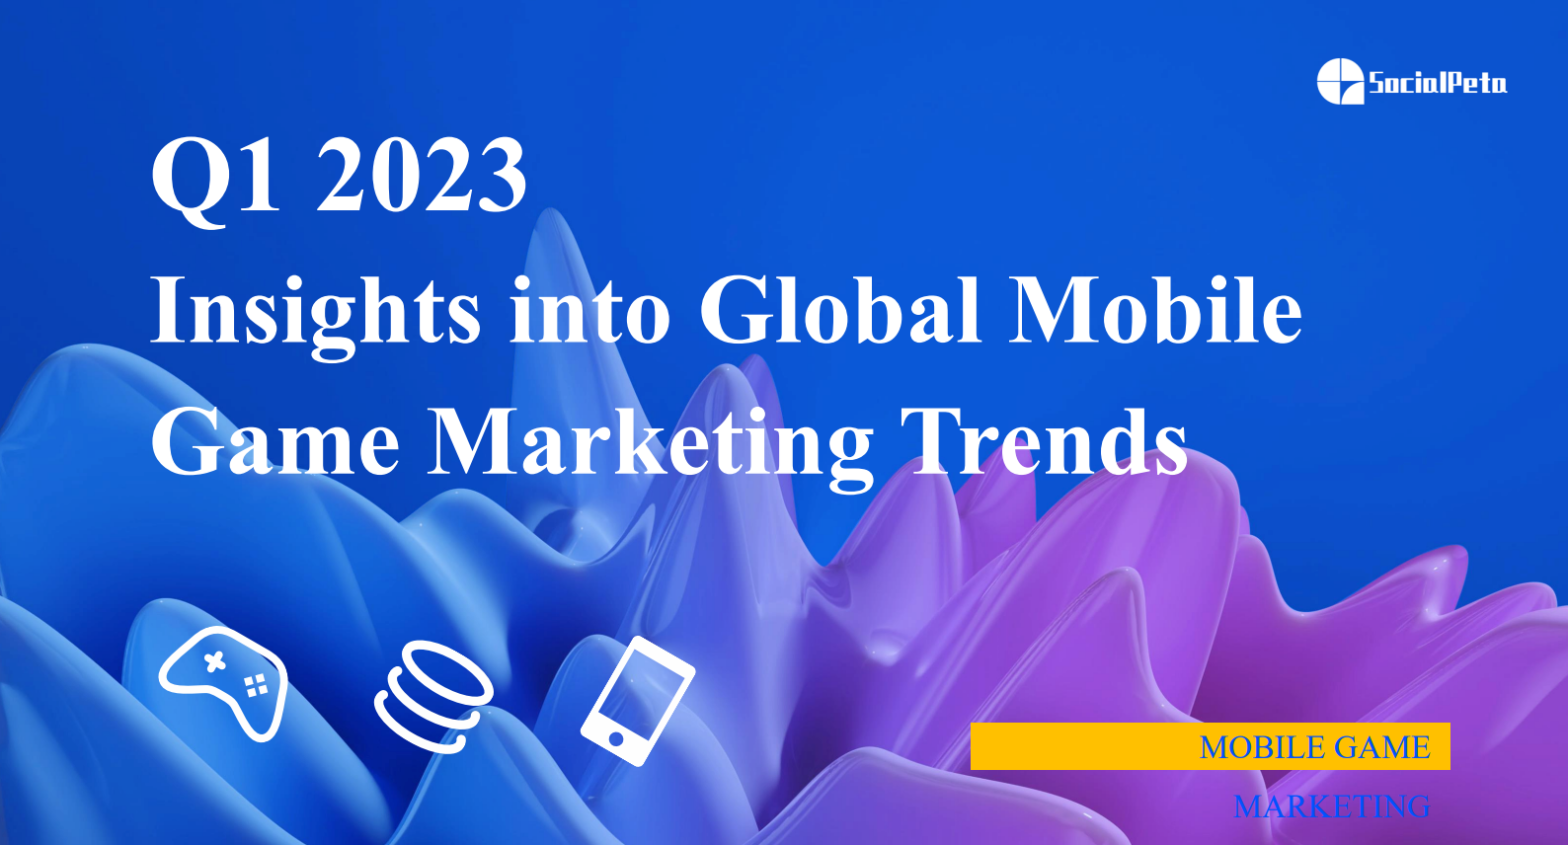 Mobile app marketing trends: SocialPeta report